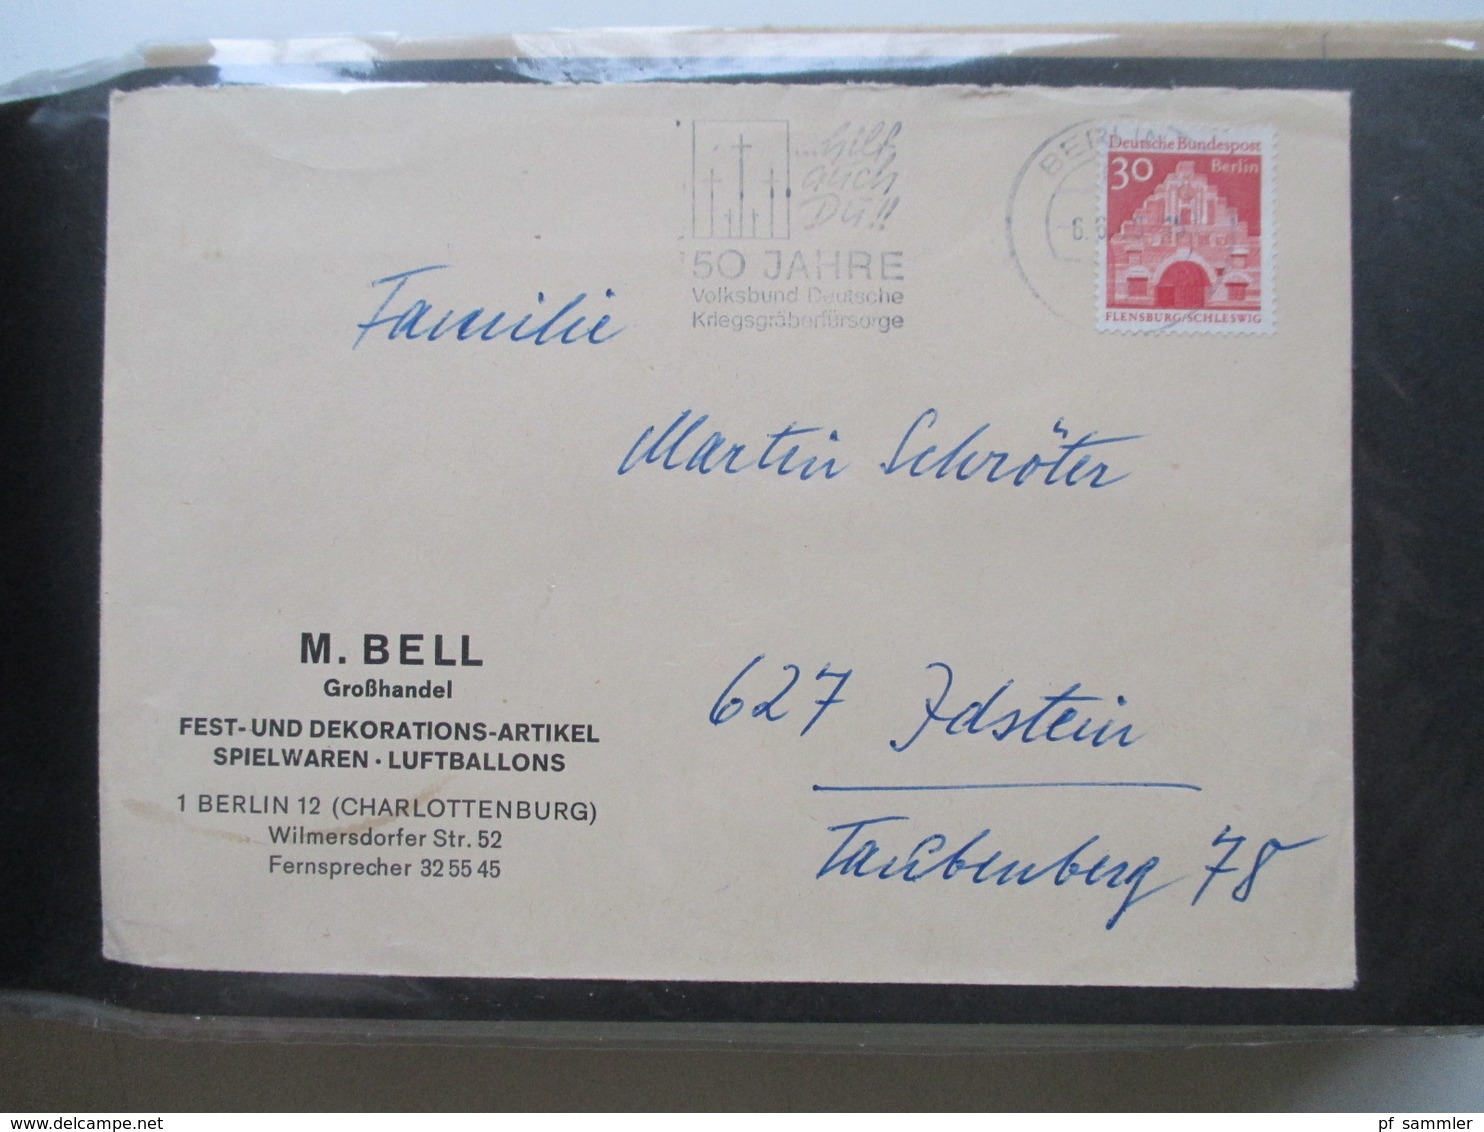 Berlin Belegealbum 100 Stk. 1949 - 90 einige Einschreiben und auch Luftpost Bedarf und Sammlerbelege. Stöberposten!